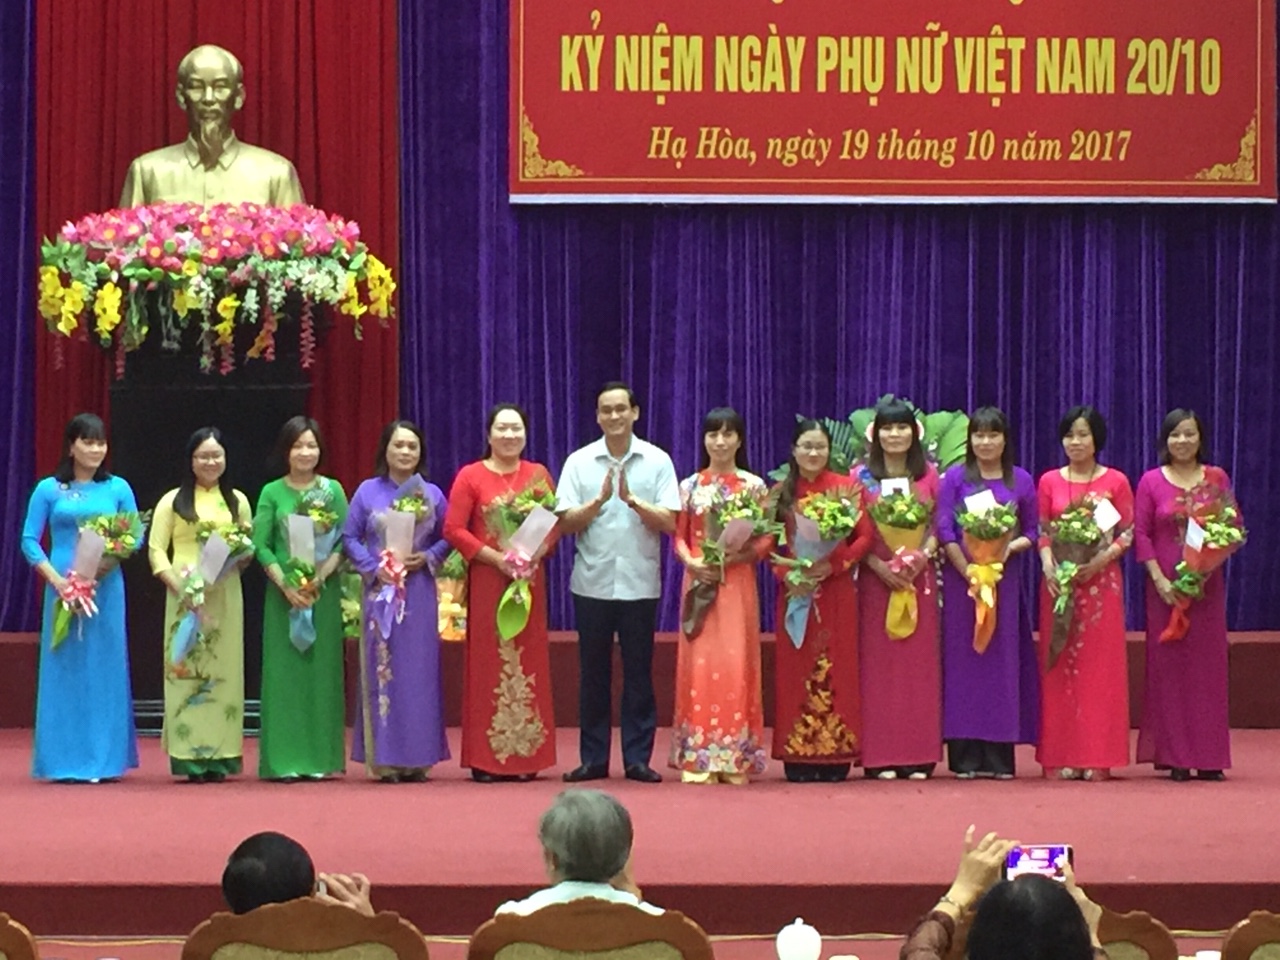 Hạ Hòa gặp mặt cán bộ nữ nhân kỷ niệm Ngày phụ nữ Việt Nam 